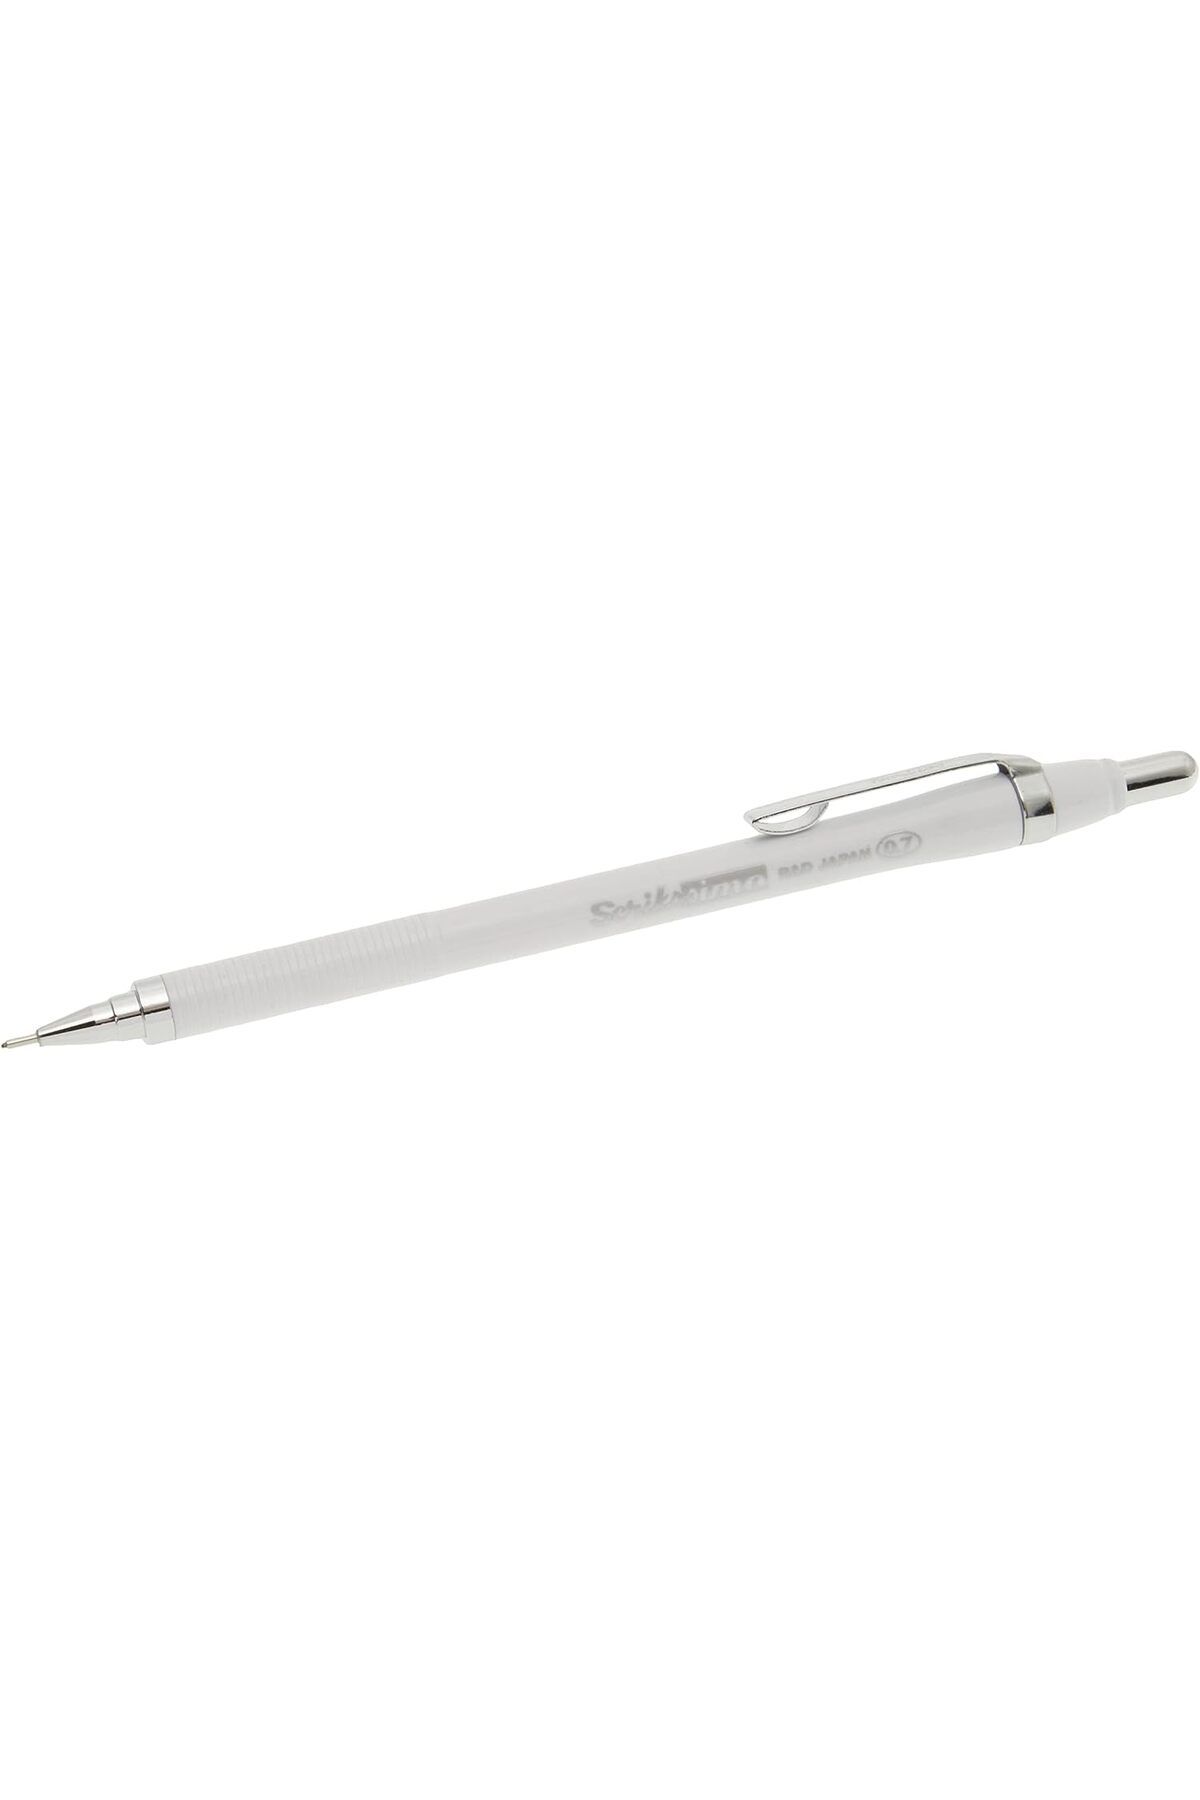 Scrikss Office Simo Mekanik Kurşun Kalem Beyaz 0.7mm